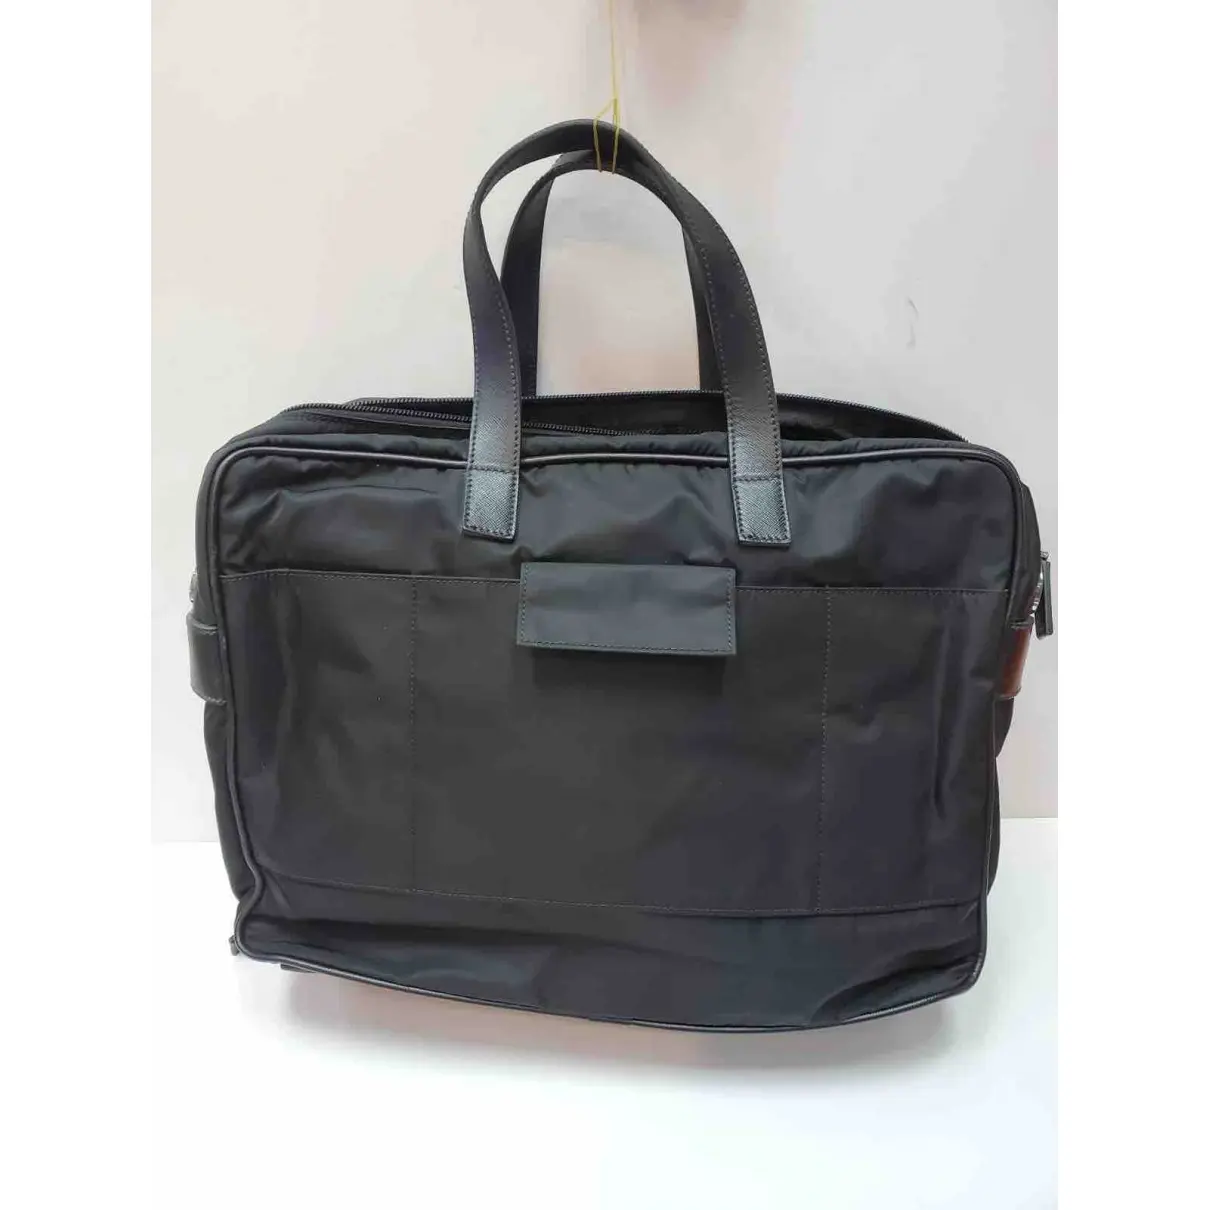 Prada Weekend bag for sale